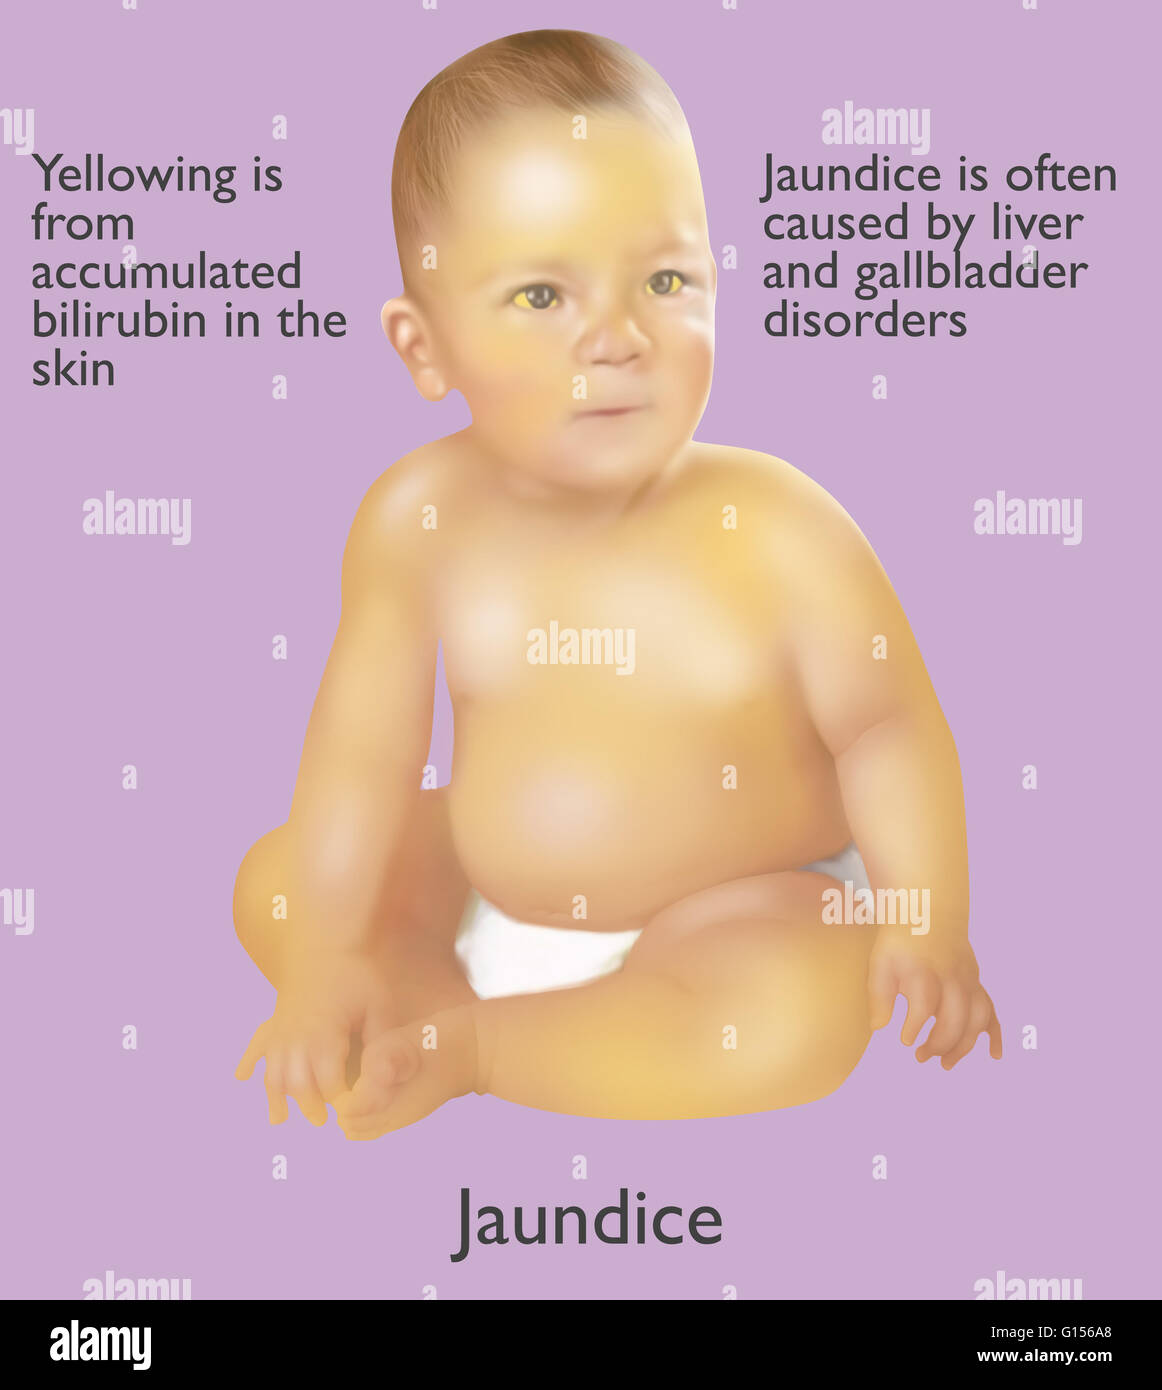 Abbildung eines Säuglings mit Gelbsucht. Gelbsucht wird oft durch Leber und Gallenblase Erkrankungen verursacht. Die gelbe Farbe stammt aus angesammelten Bilirubin in der Haut. Stockfoto